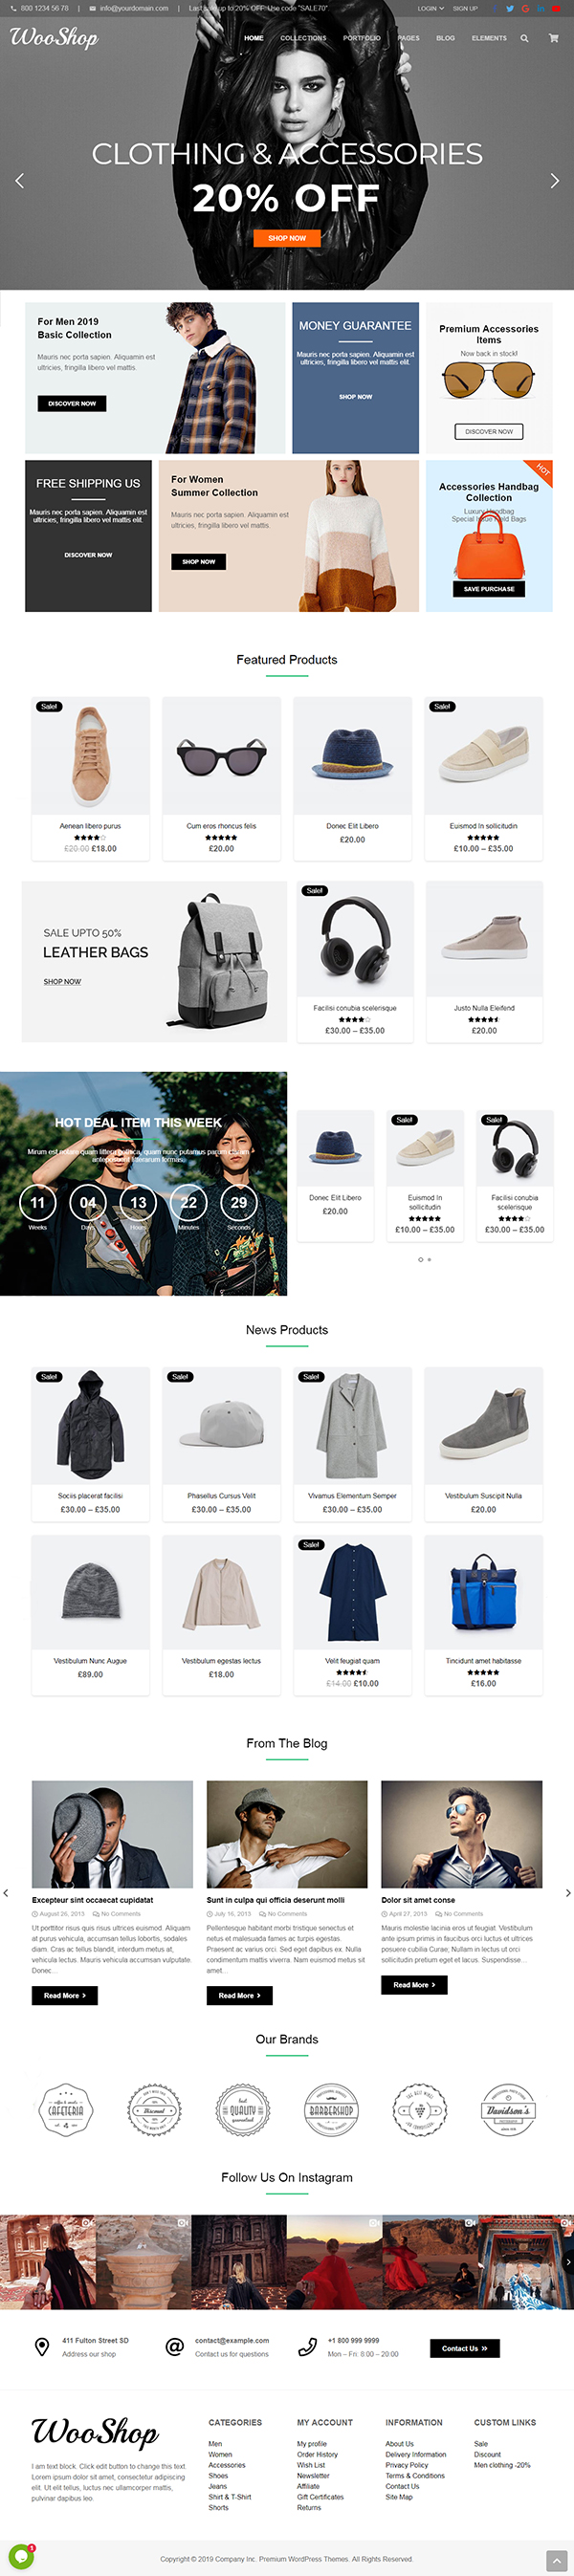 WooShop - Fashion eCommerce Theme